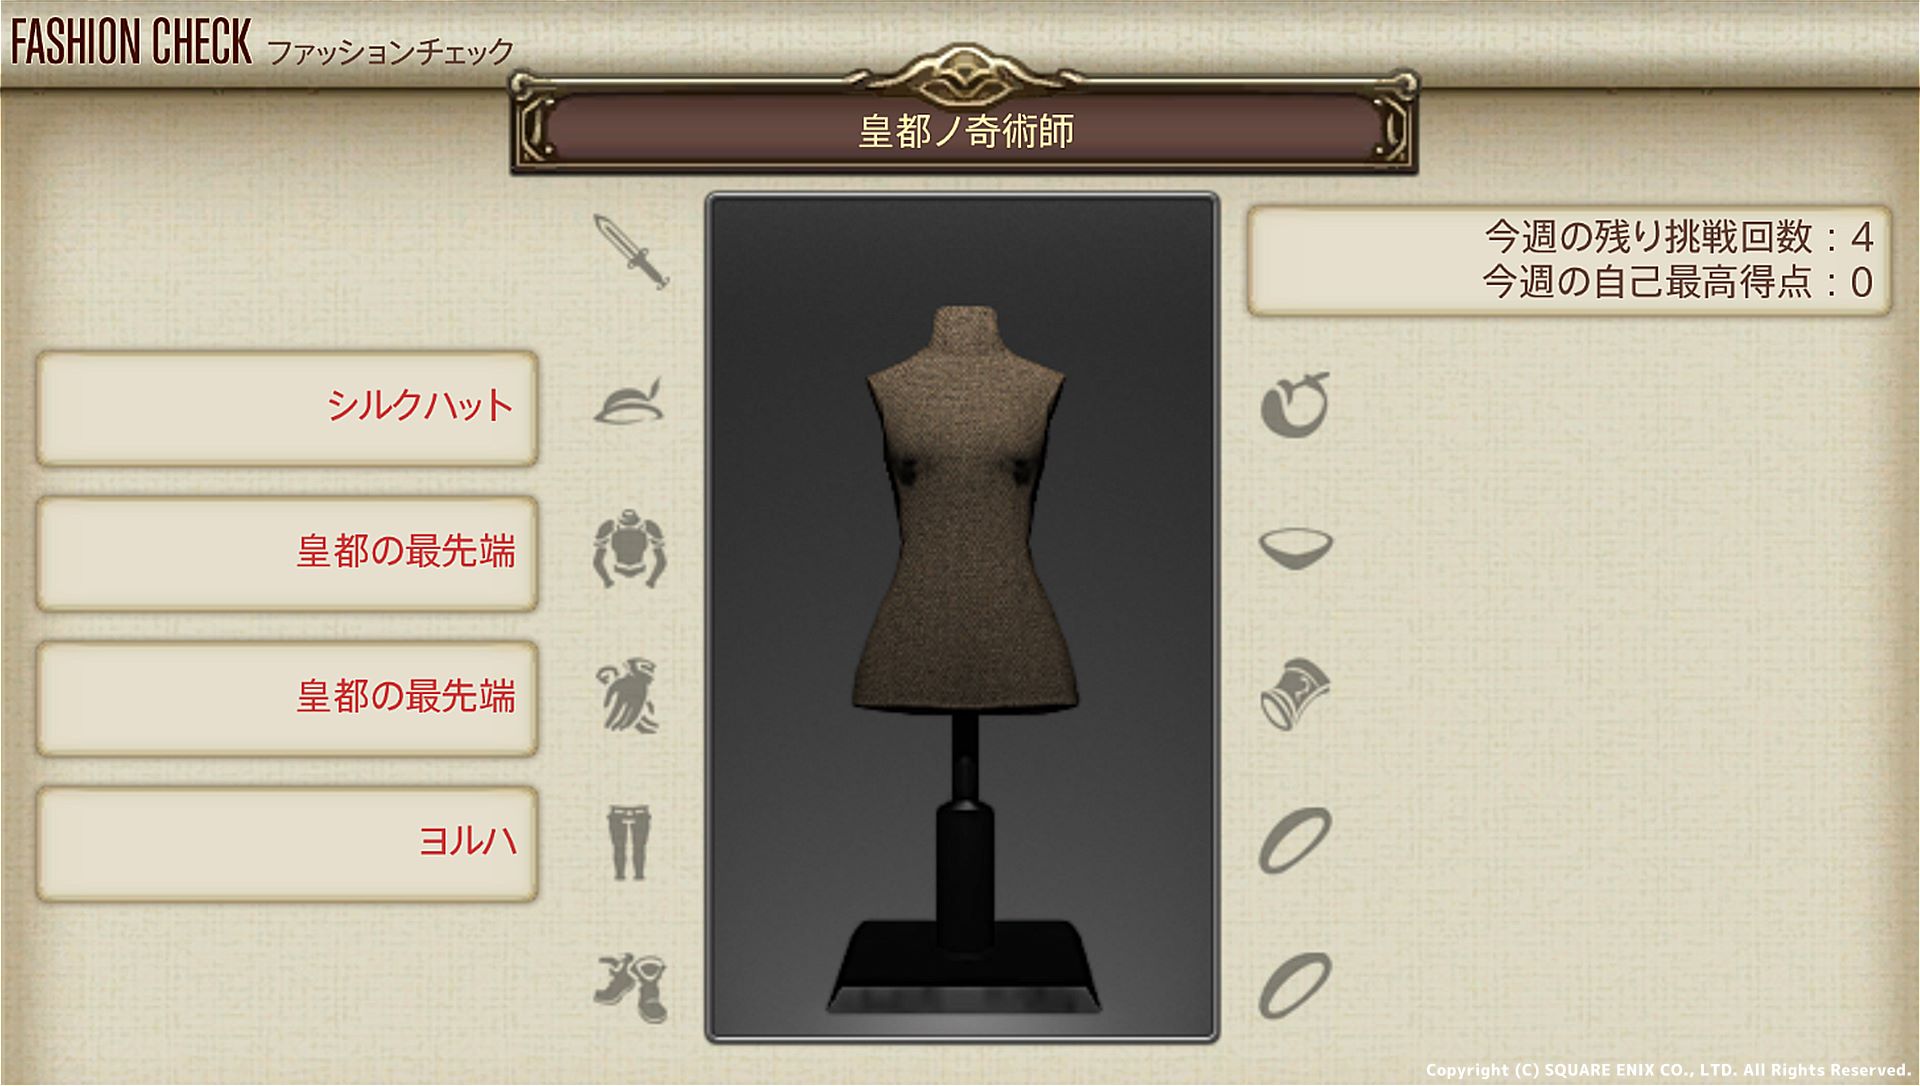 【FF14】11月21日発表のファッションチェック「皇都ノ奇術師」金評価・100点評価装備